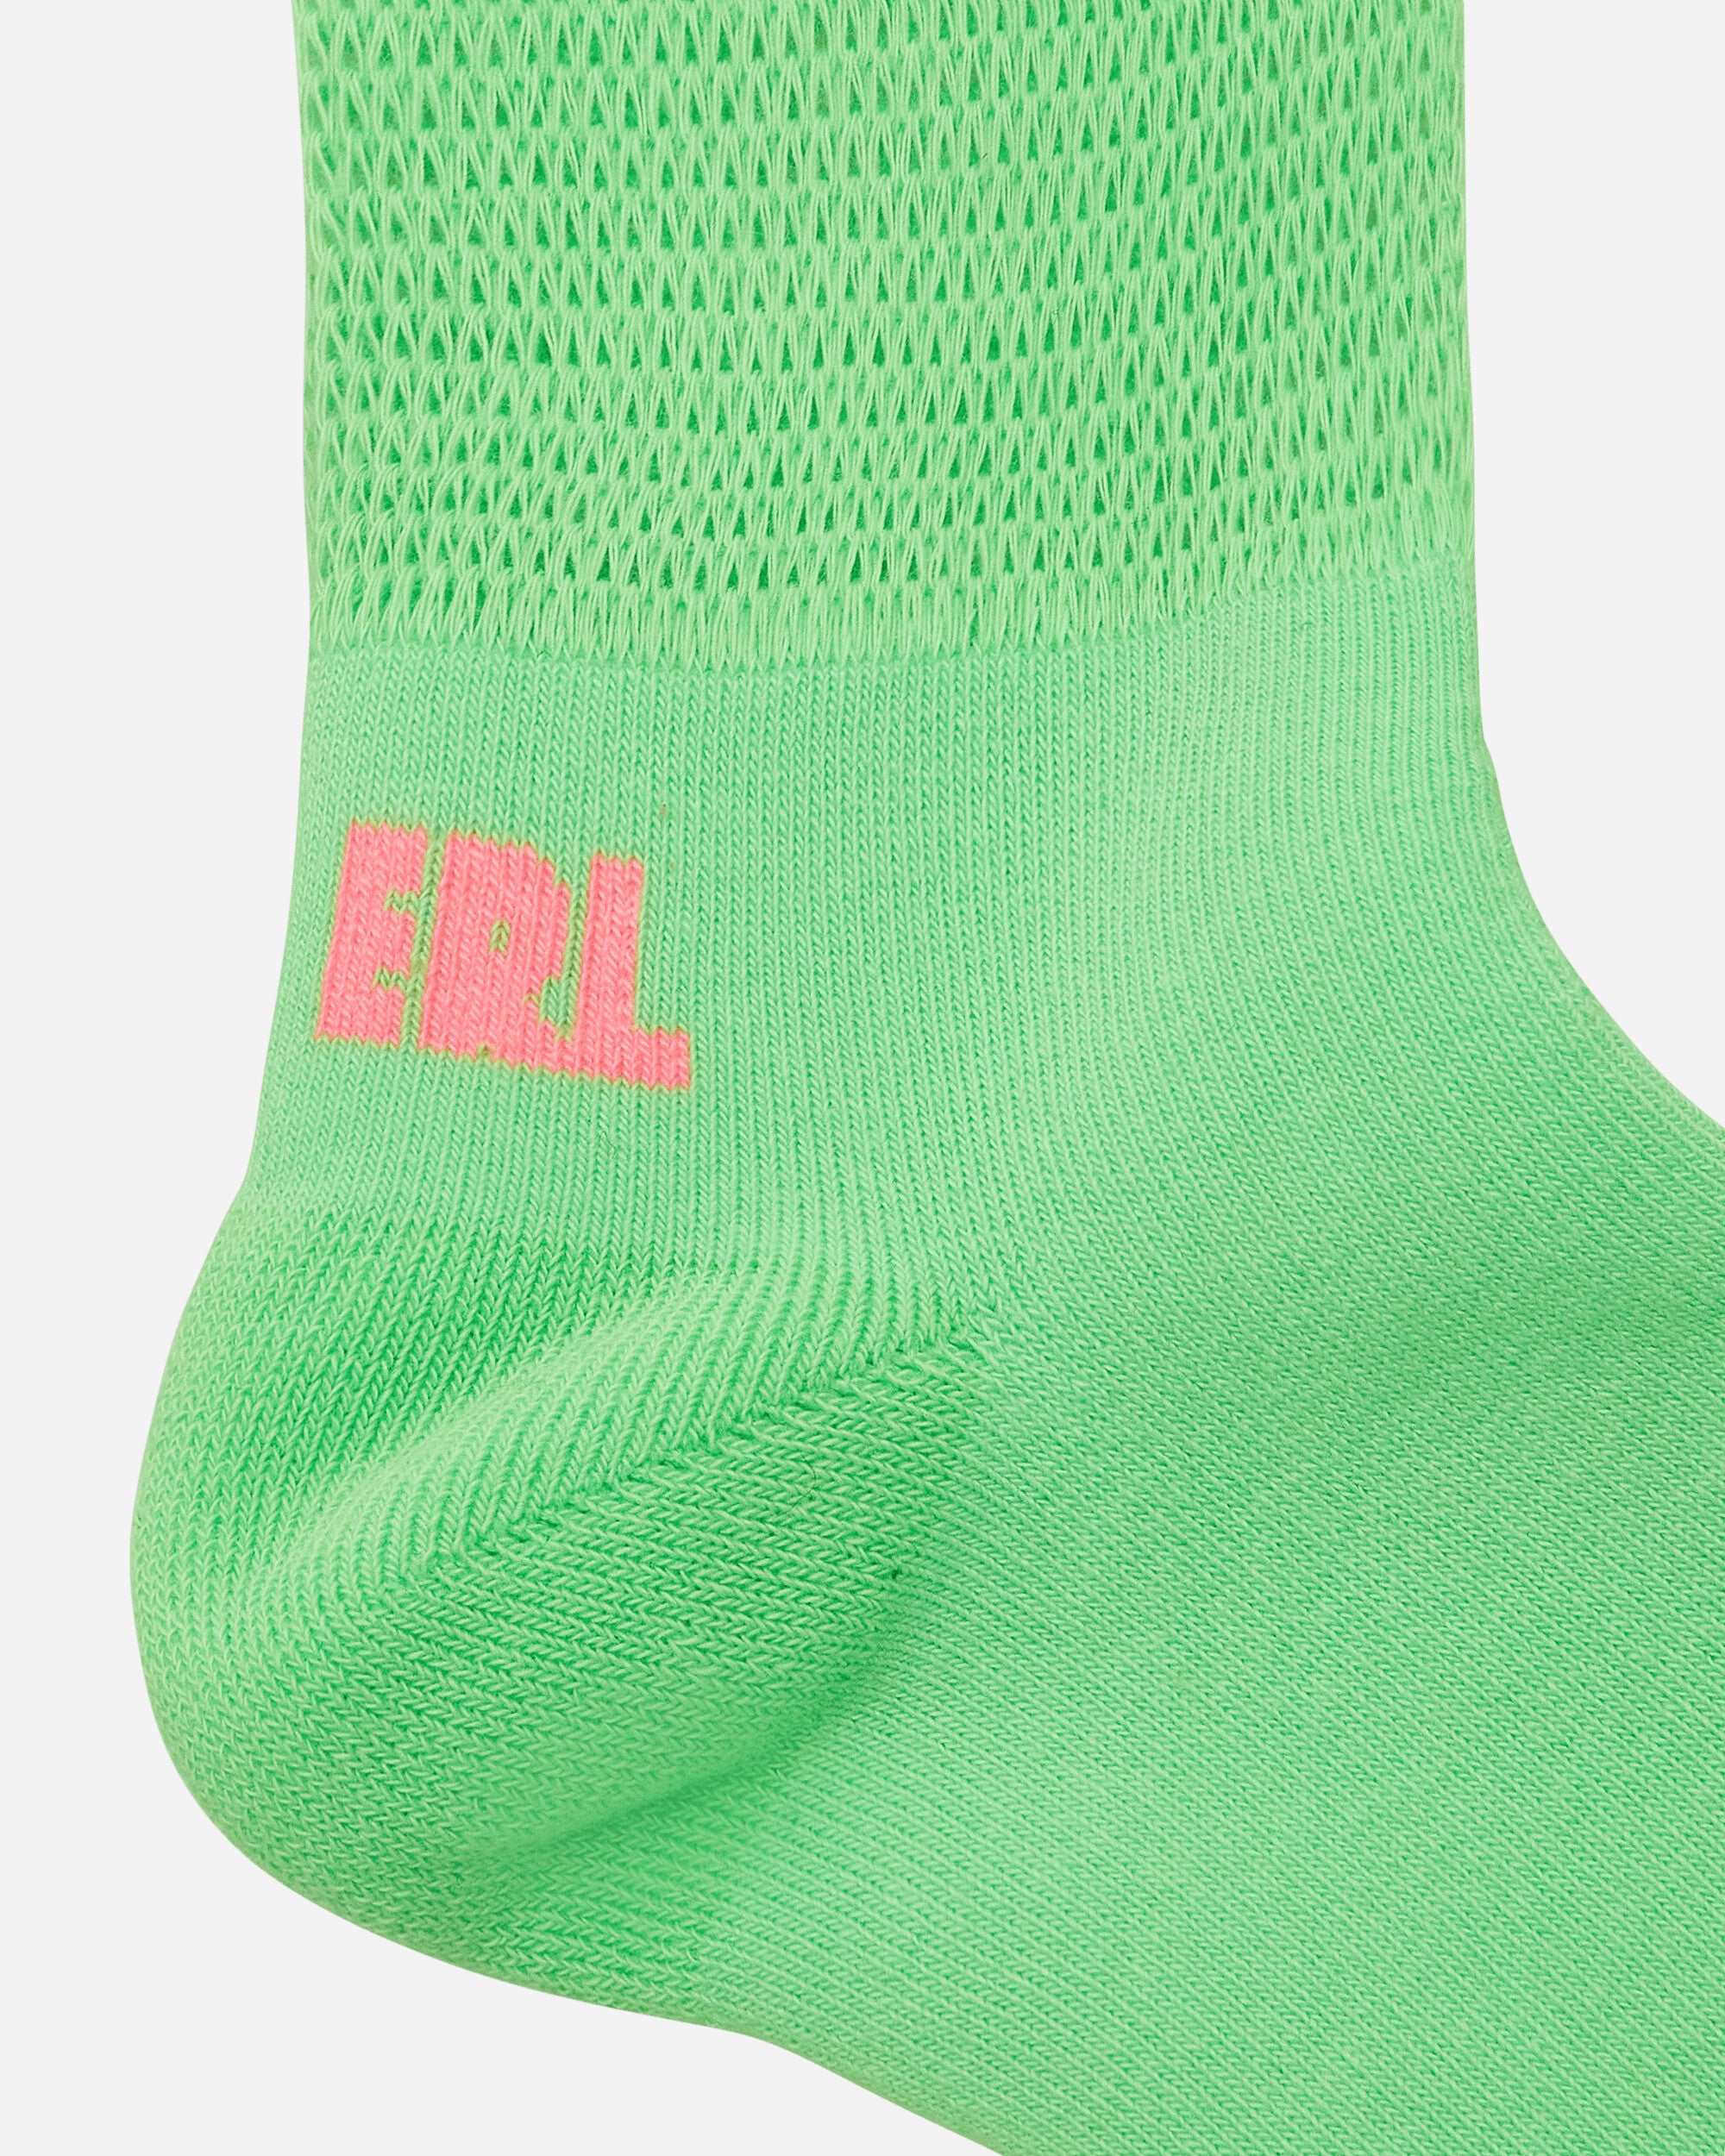 ERL Openwork Socks Knit Green Underwear Socks ERL06K009  3